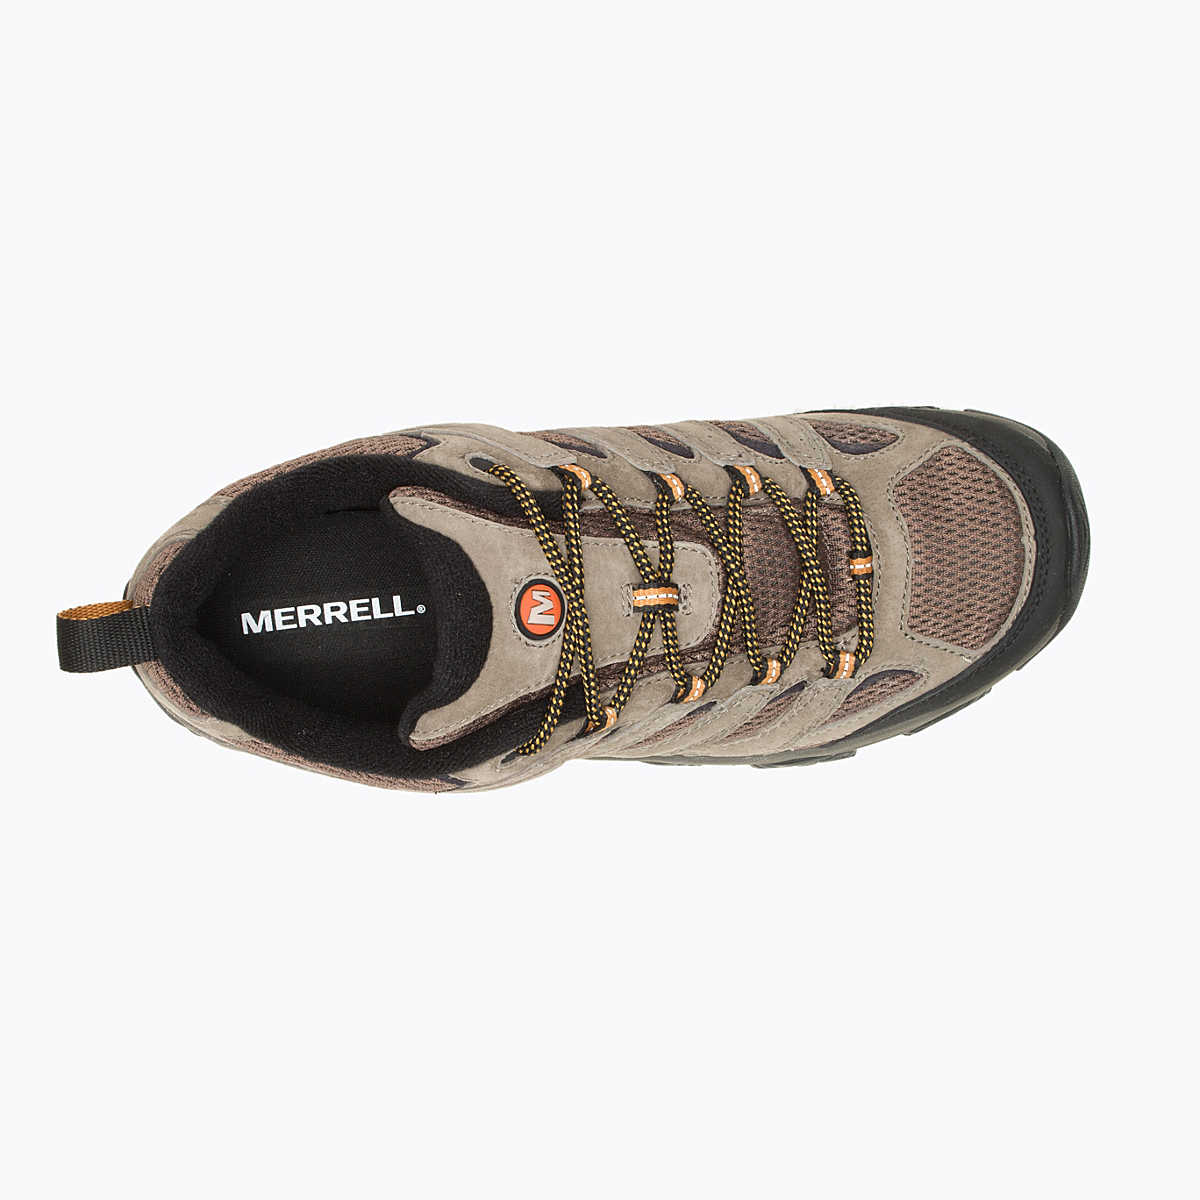 Merrell Moab 3 Wide Hiking Shoe - 88 Gear